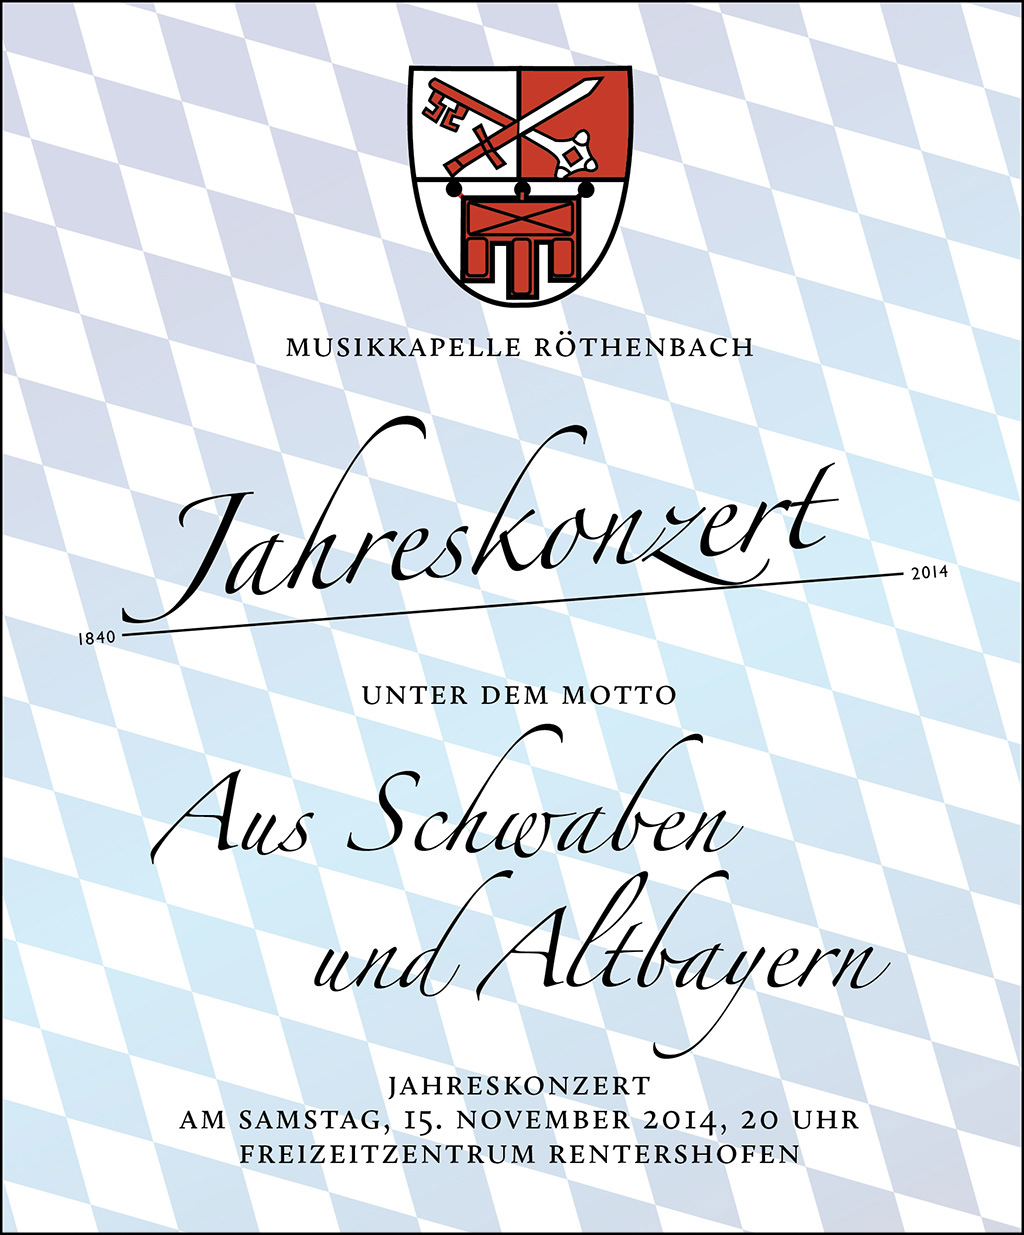 Jahreskonzert der Musikkapelle Röthenbach unter dem Motto "Aus Schwaben und Altbayern"